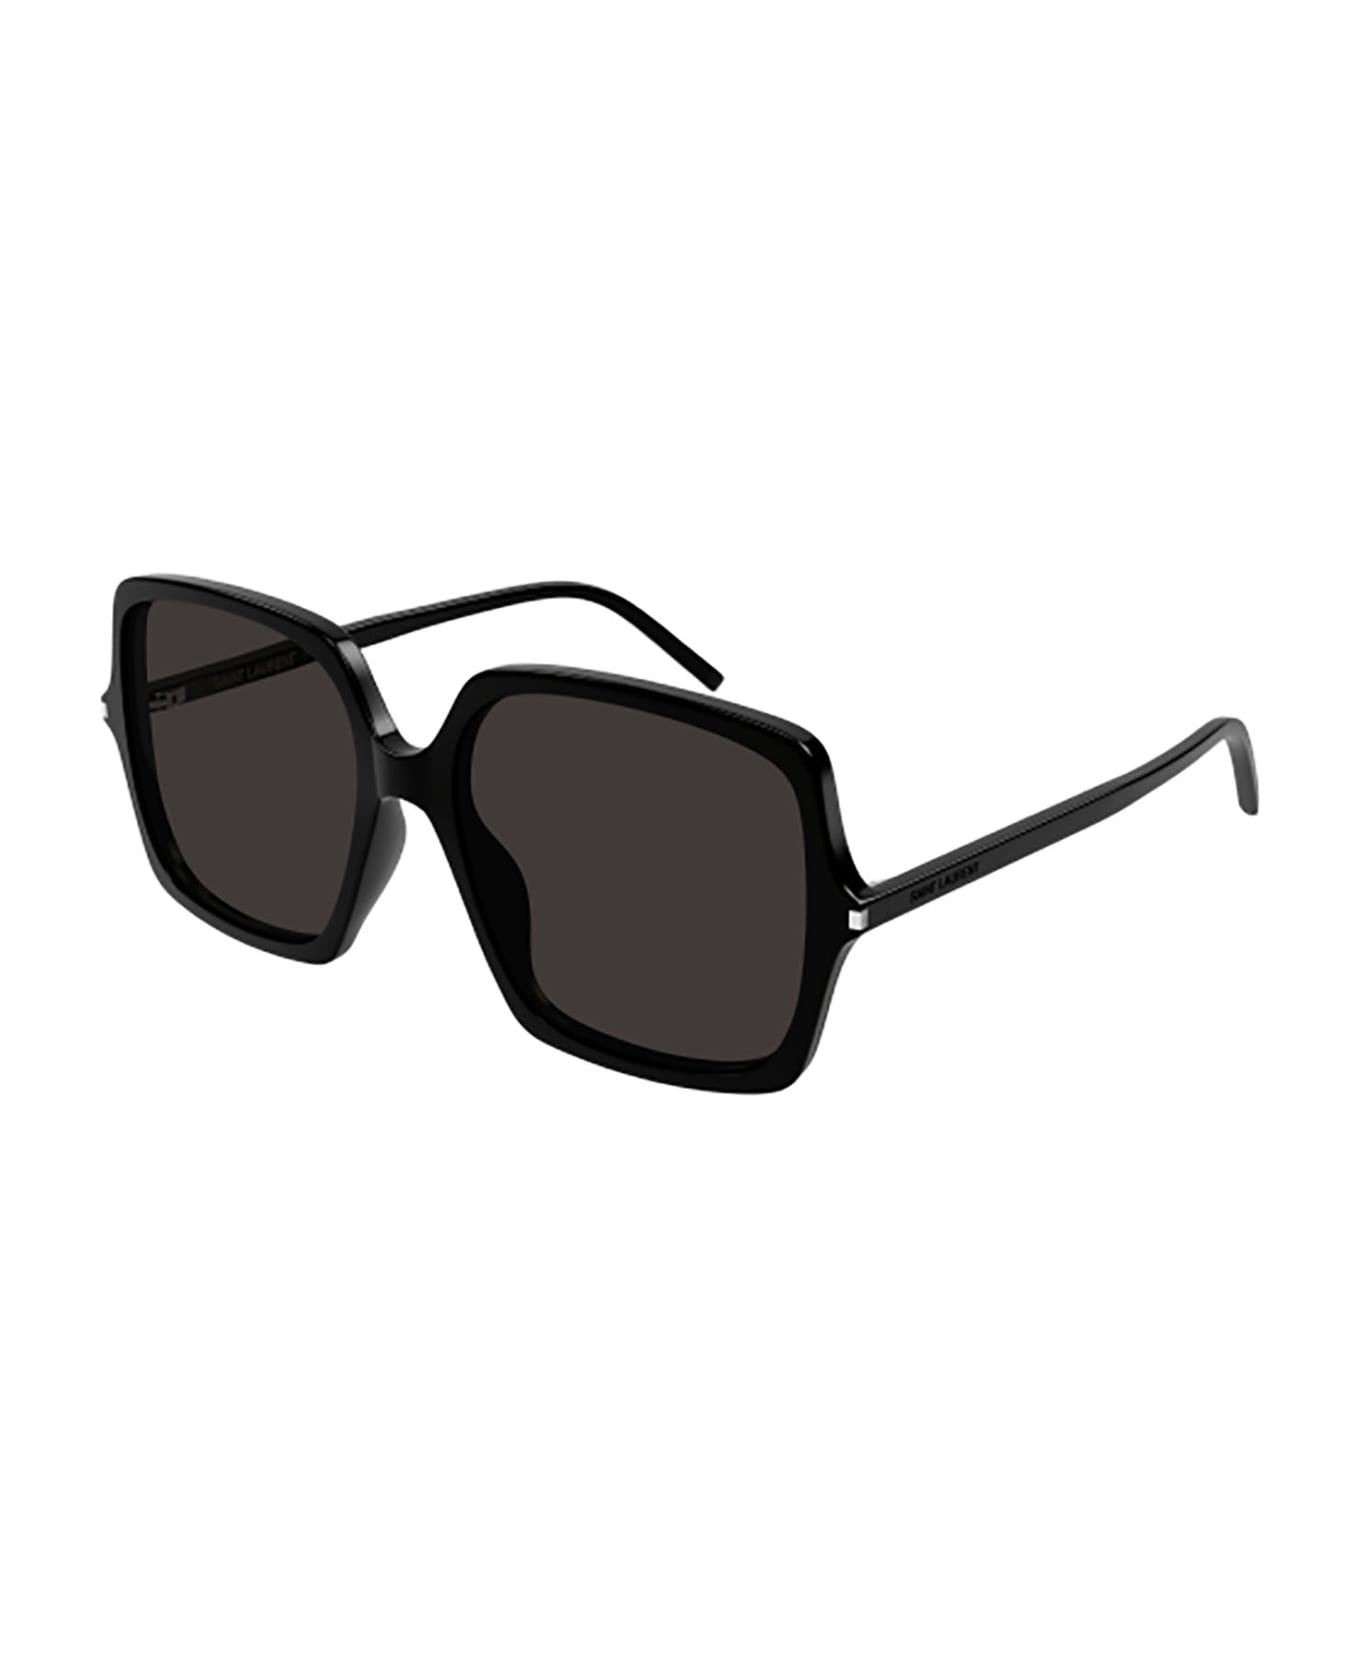 Saint Laurent Eyewear Sl 591 Sunglasses - 001 black black black